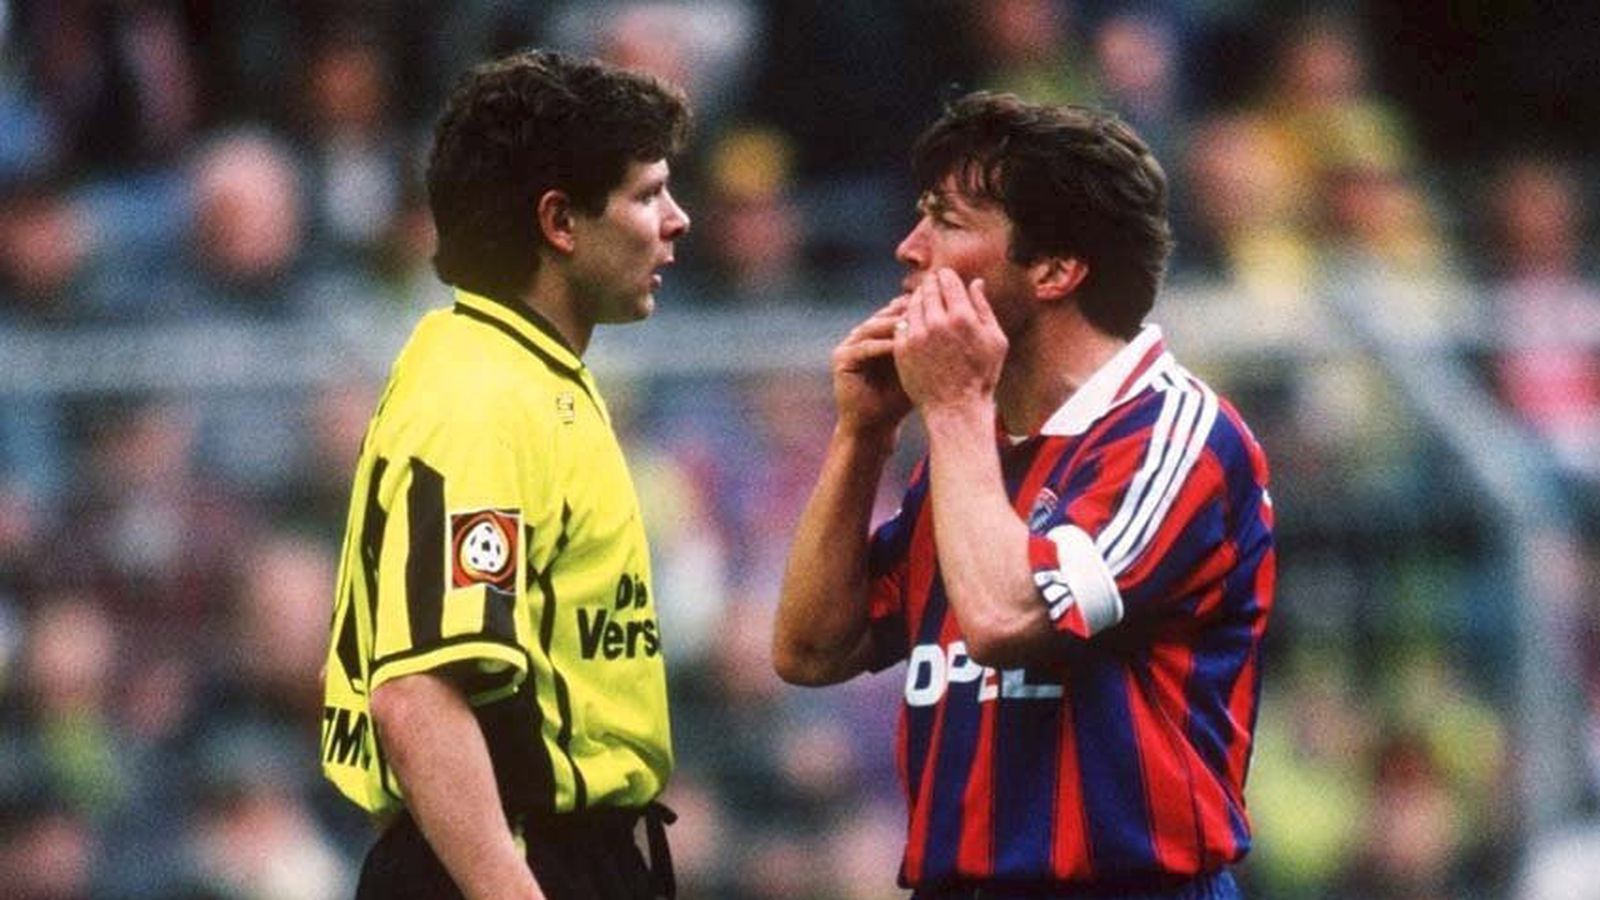 Lothar Matthäus and Andreas Möller clash in this 1997 Der Klassiker match Football Works